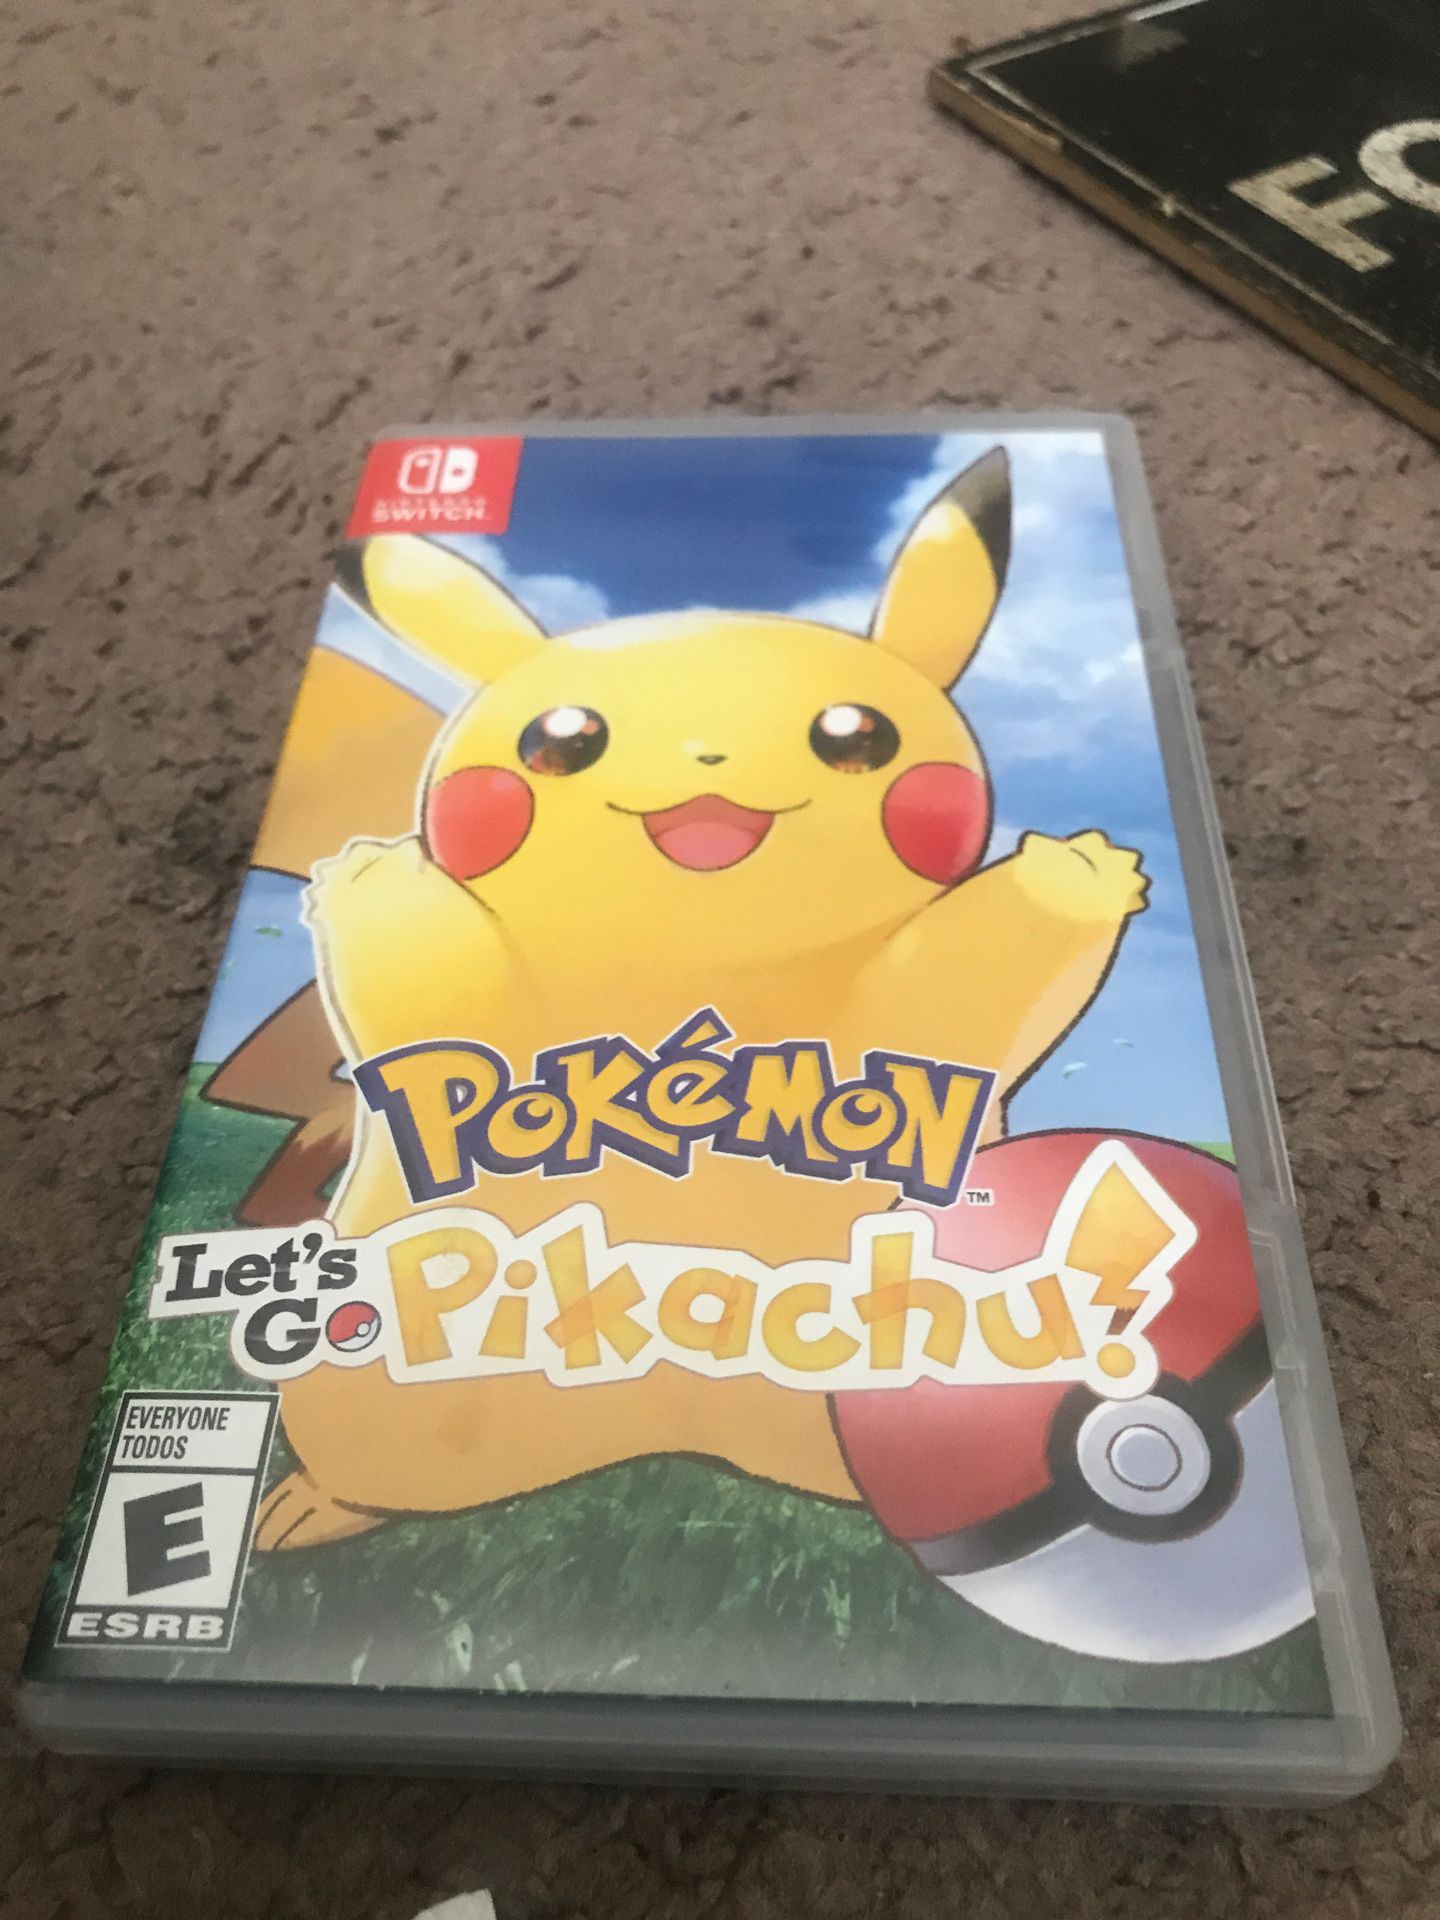 Let’s go pikachu